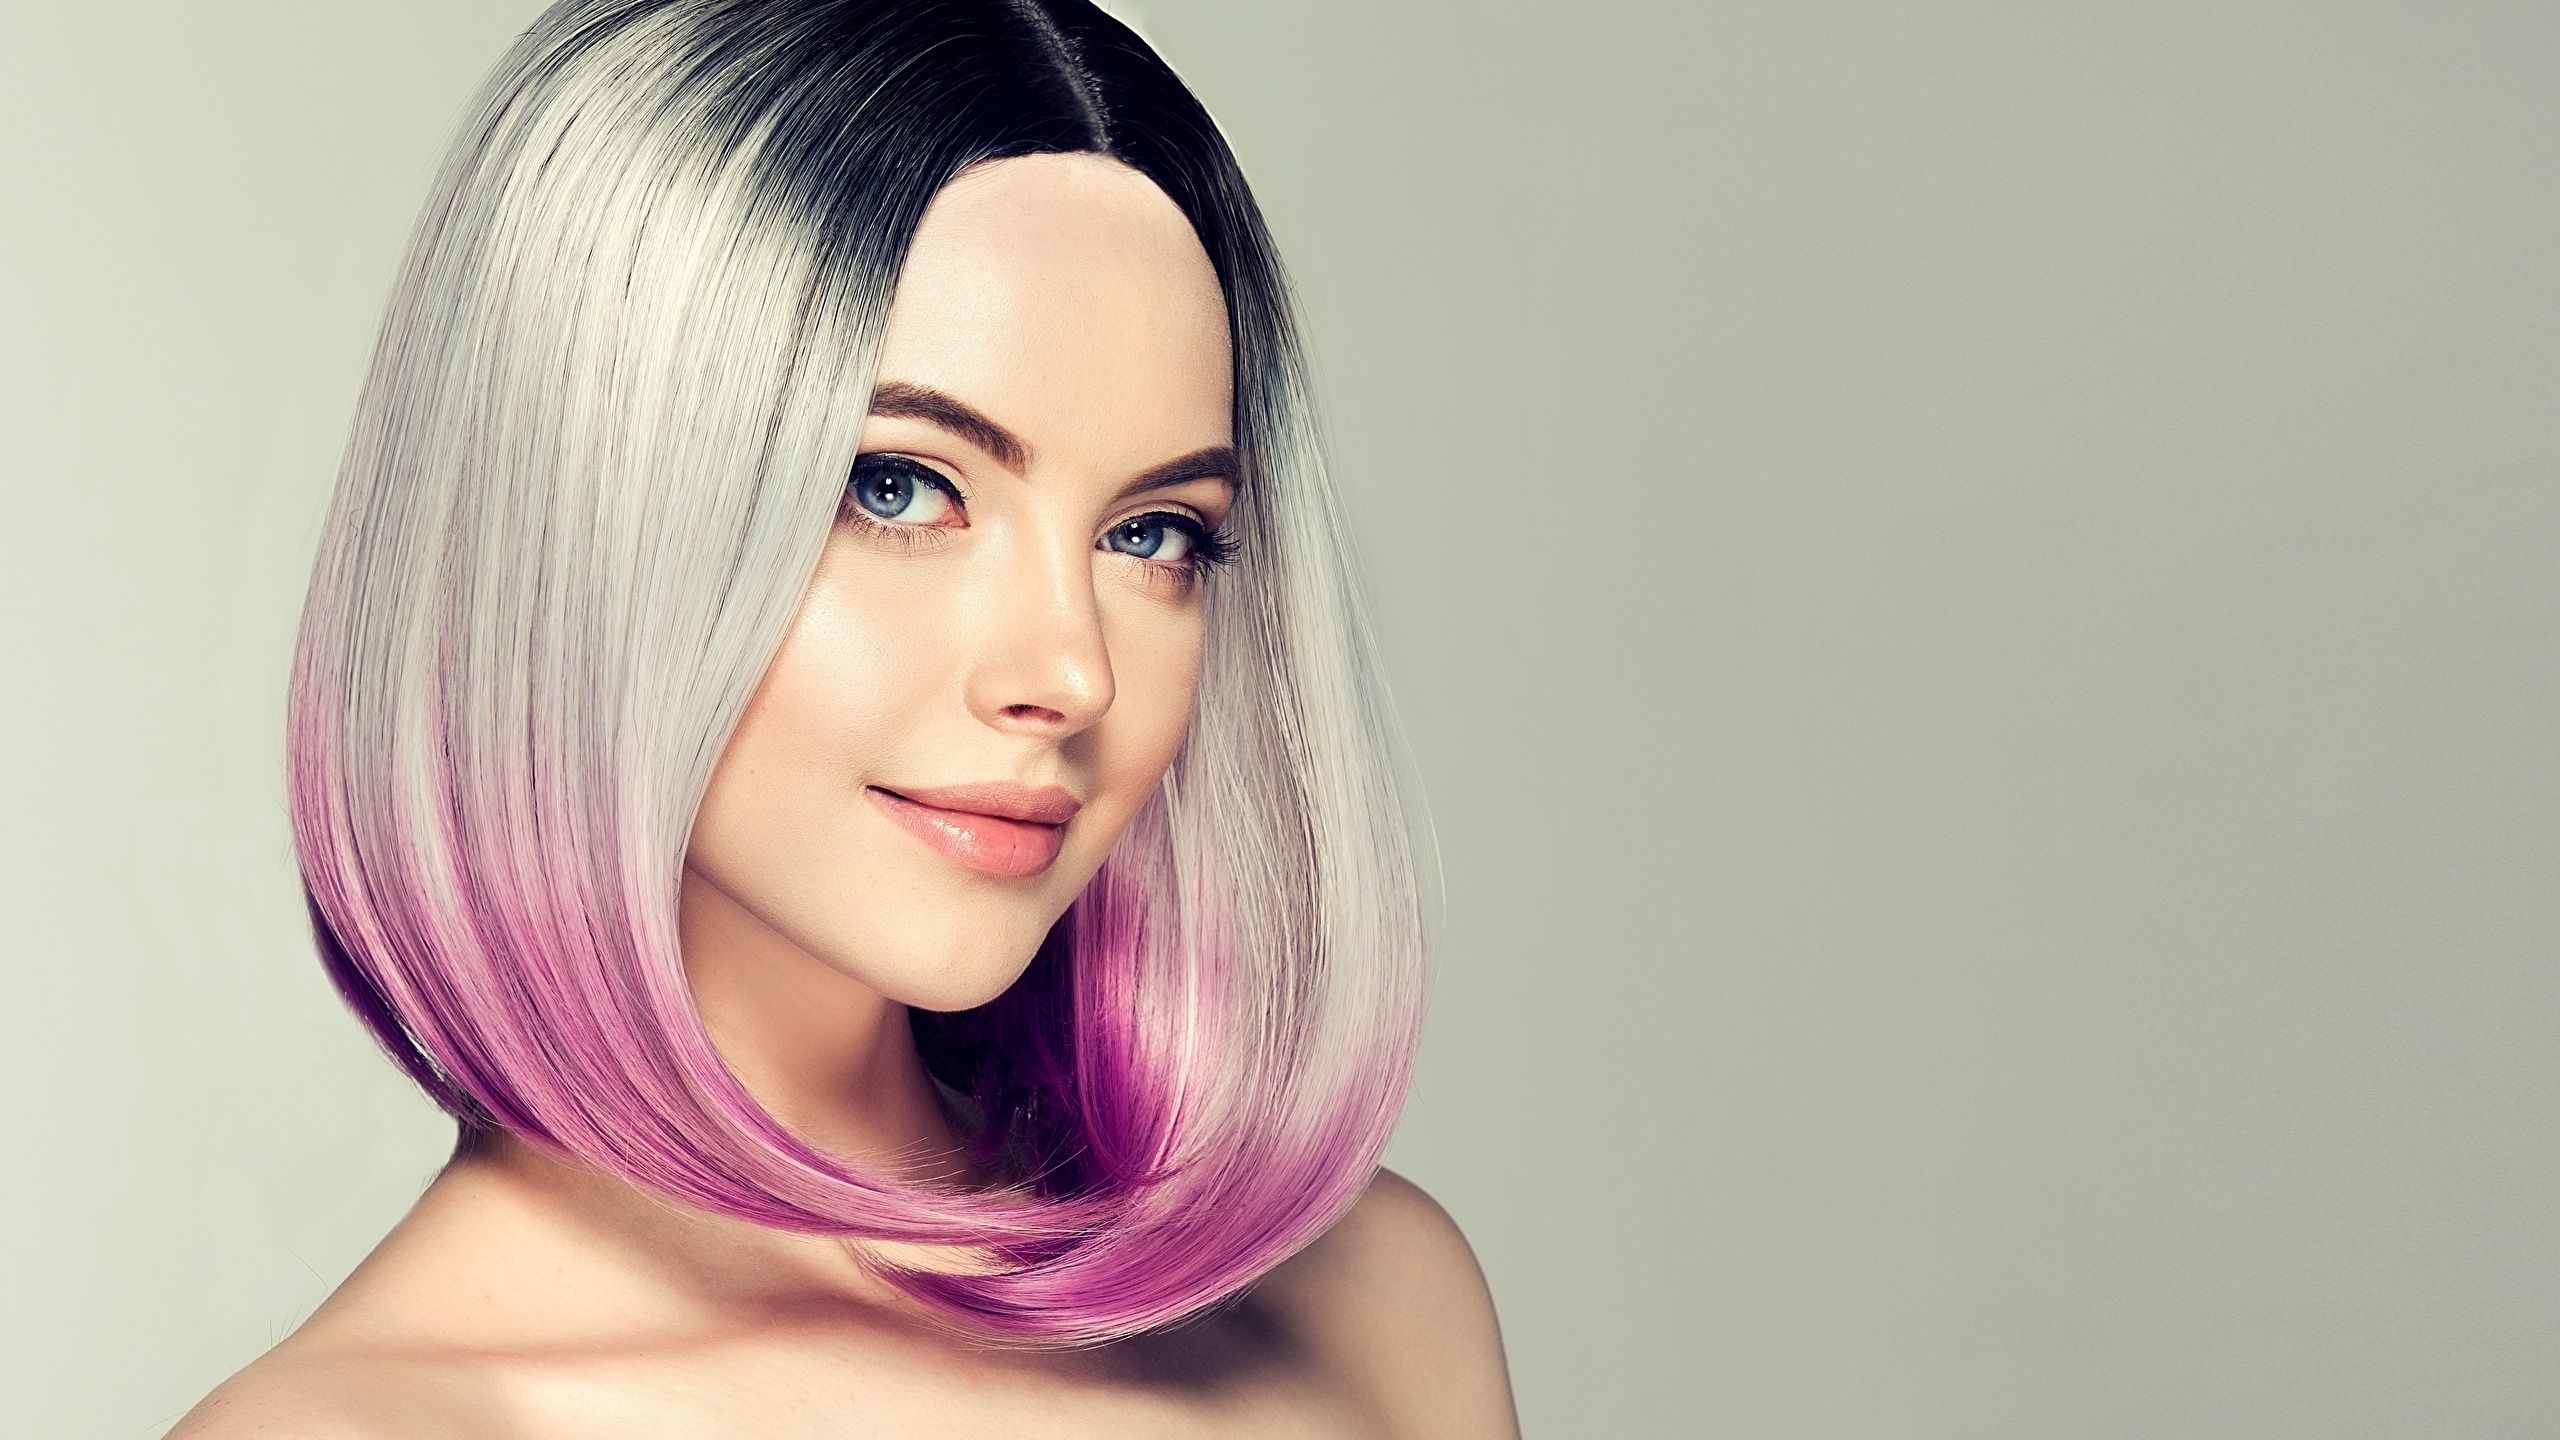 Desktop Wallpaper Girls Blonde girl Makeup Hair Face 2560x1440